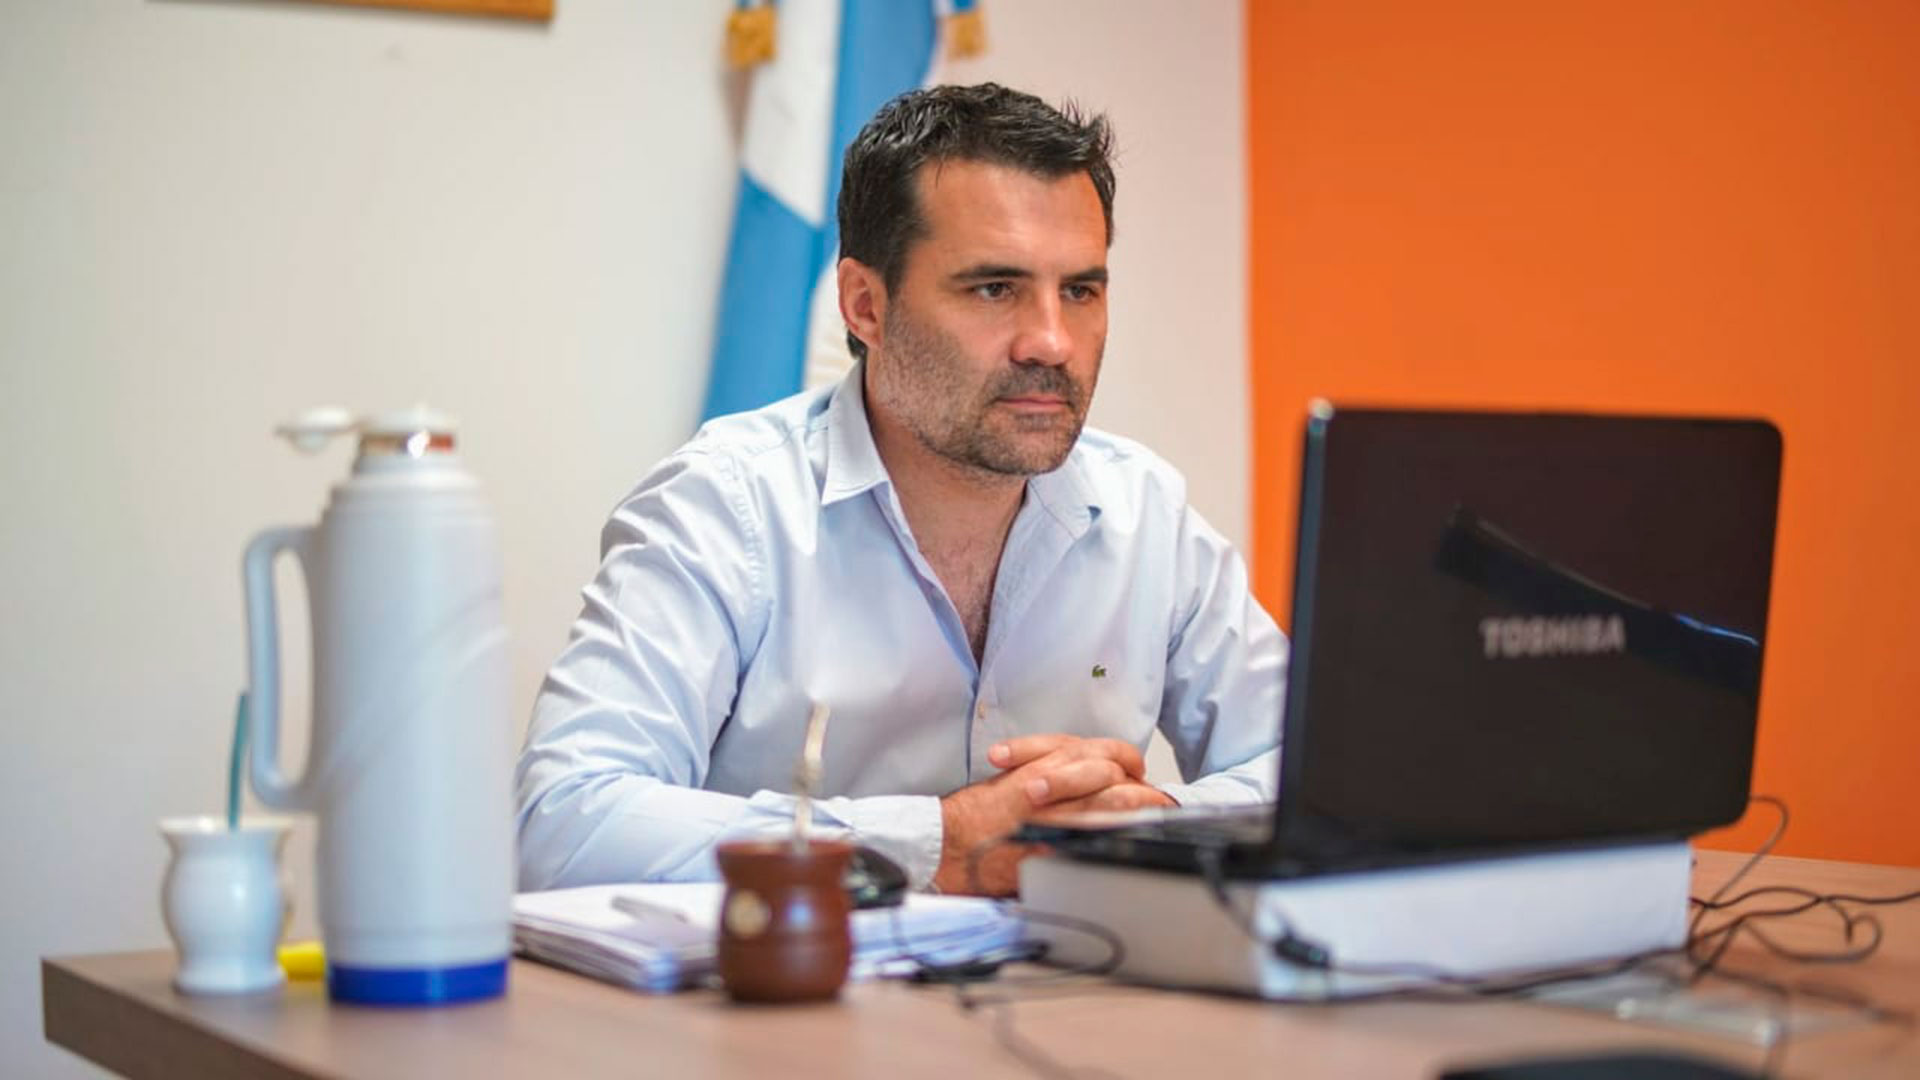 La UIA le enviará una carta formal al secretario de Energía, Darío Martínez, para pedirle que escalone los aumentos